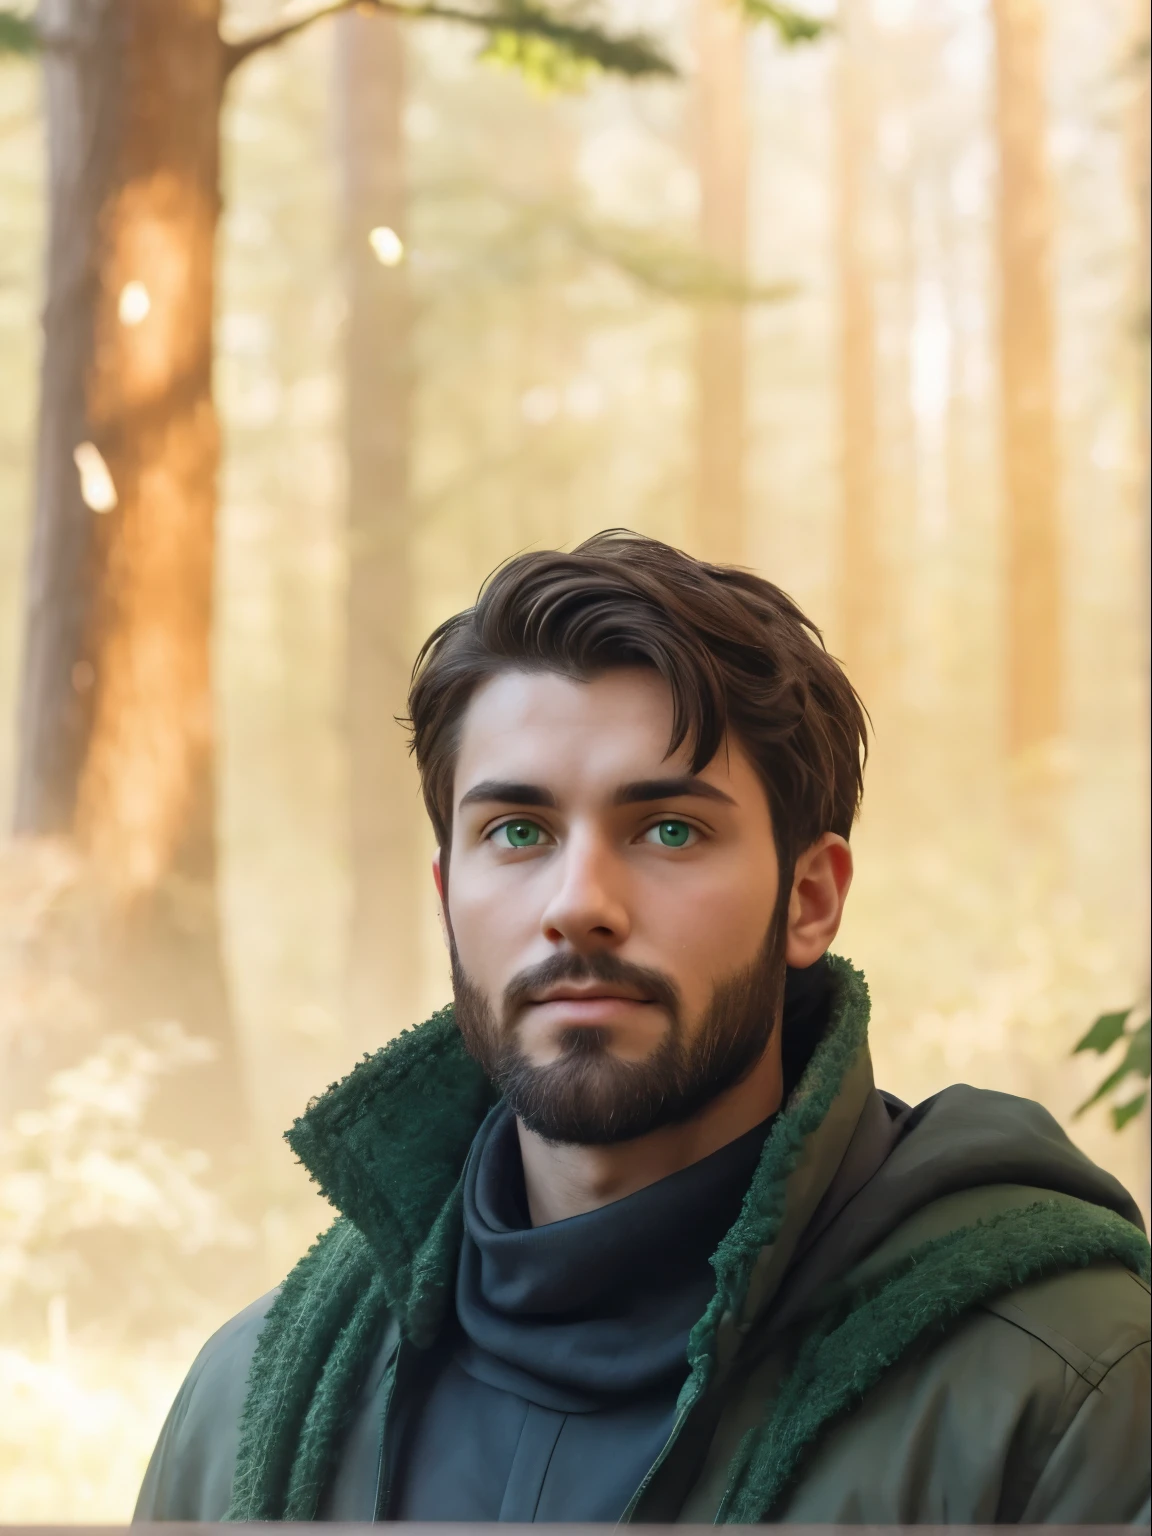 Стройный молодой человек с темными волосами, короткая борода и зеленые глаза.  За ним лес.